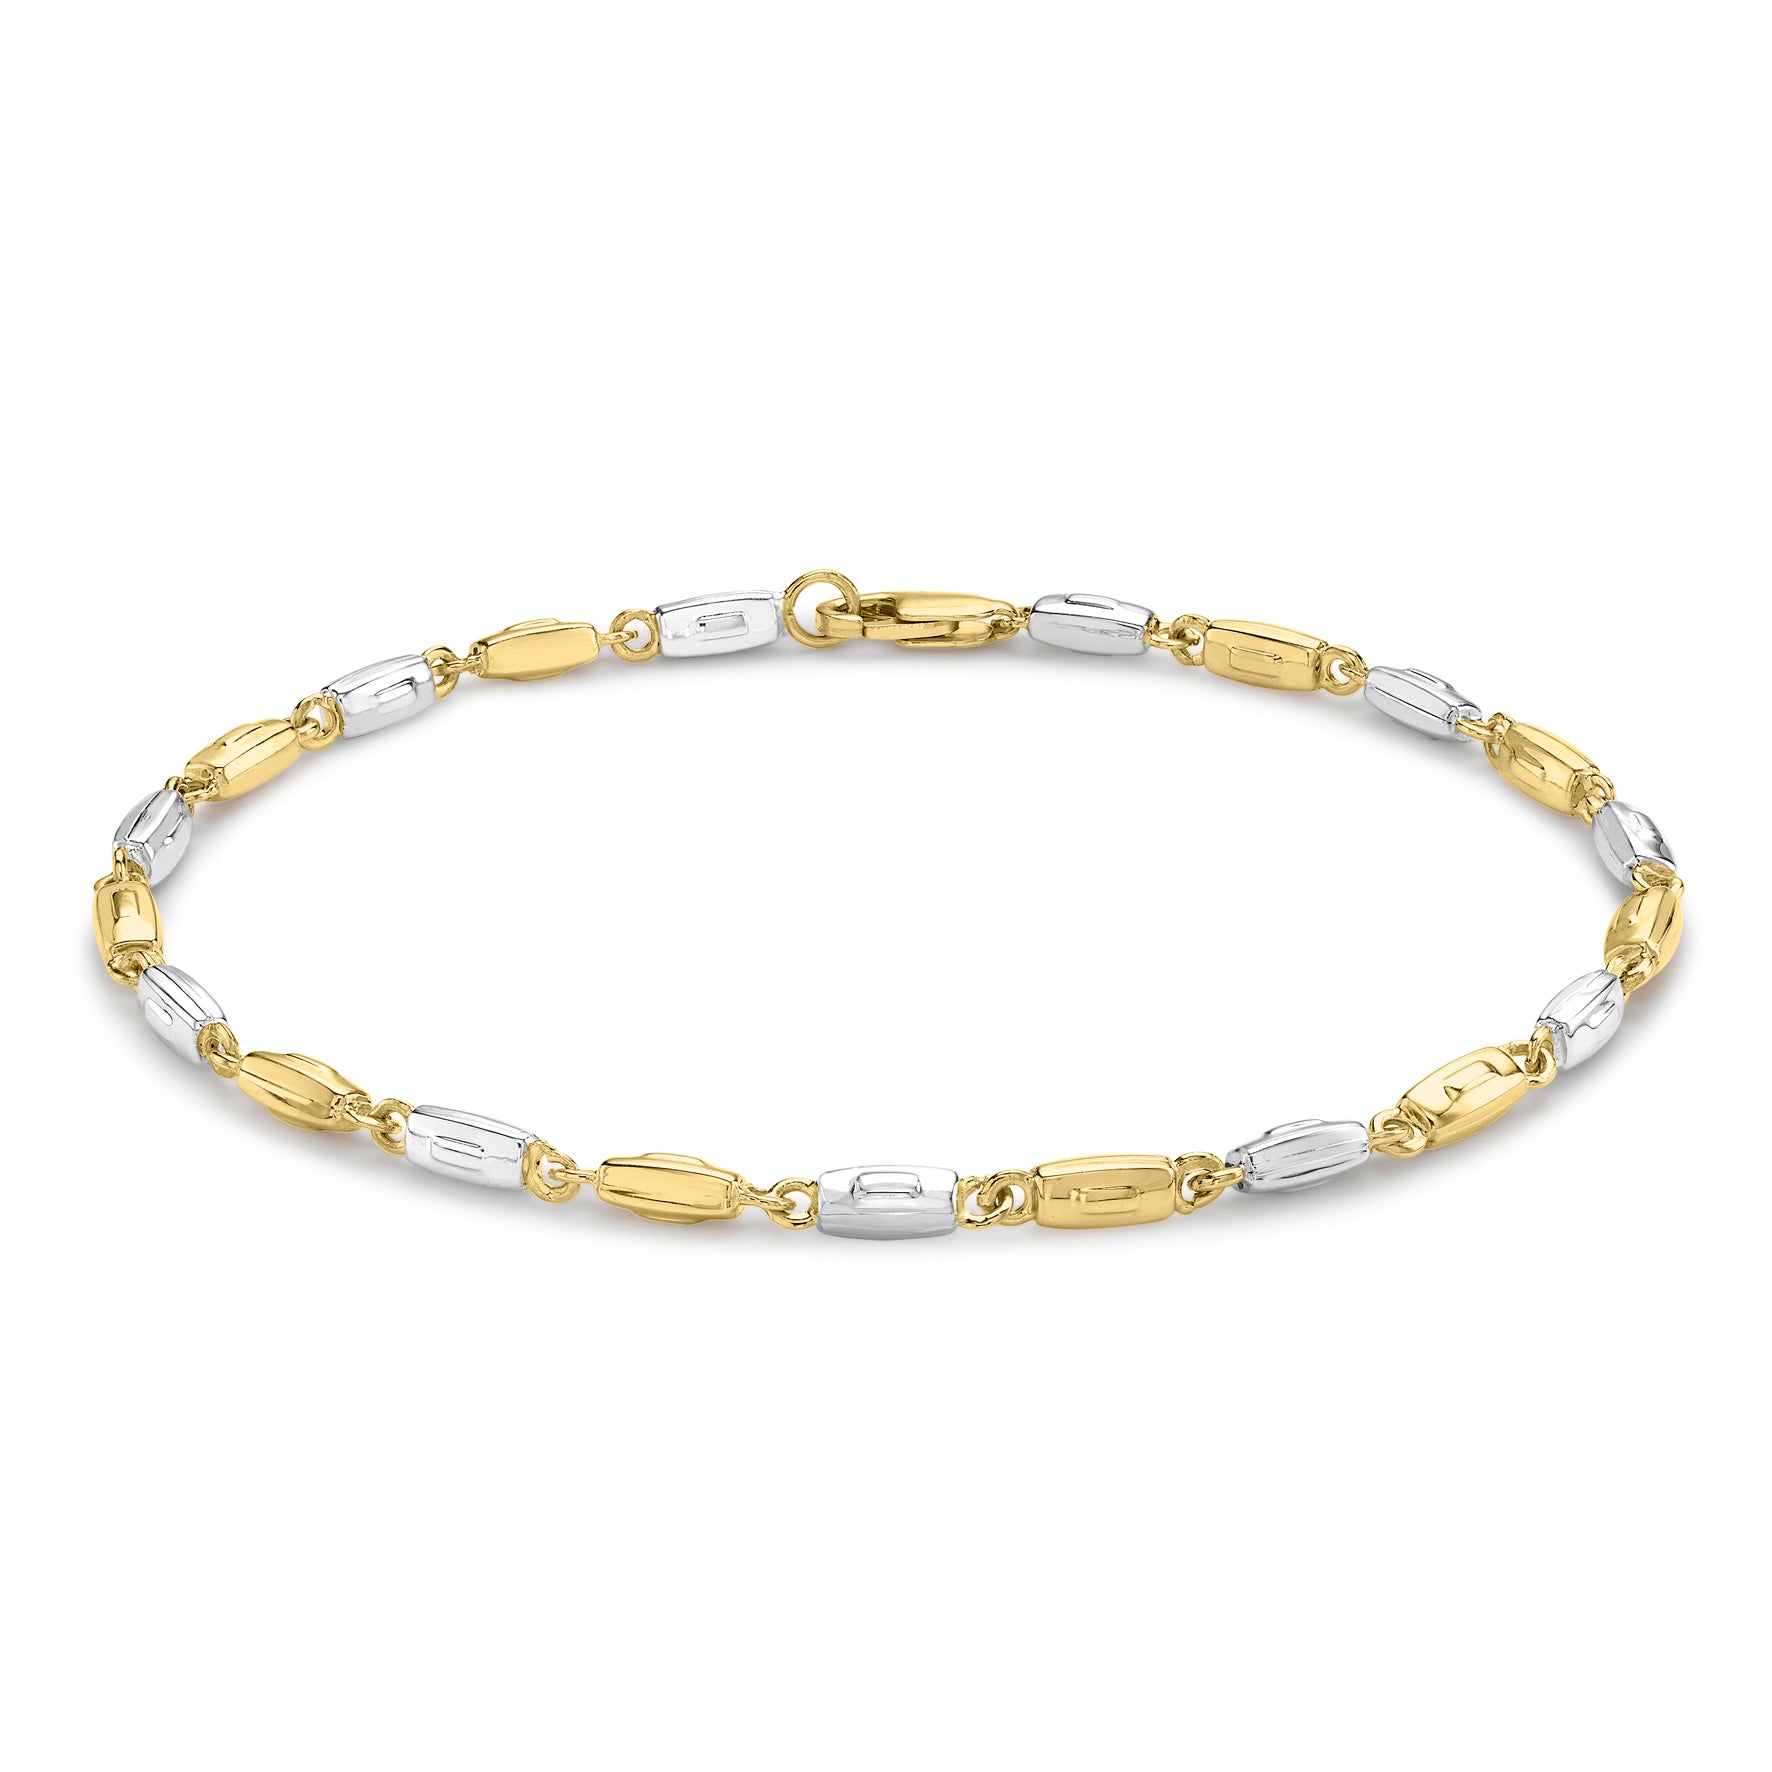 Ór Collection 9Ct 2-Colour Gold Rectangle Link Bracelet